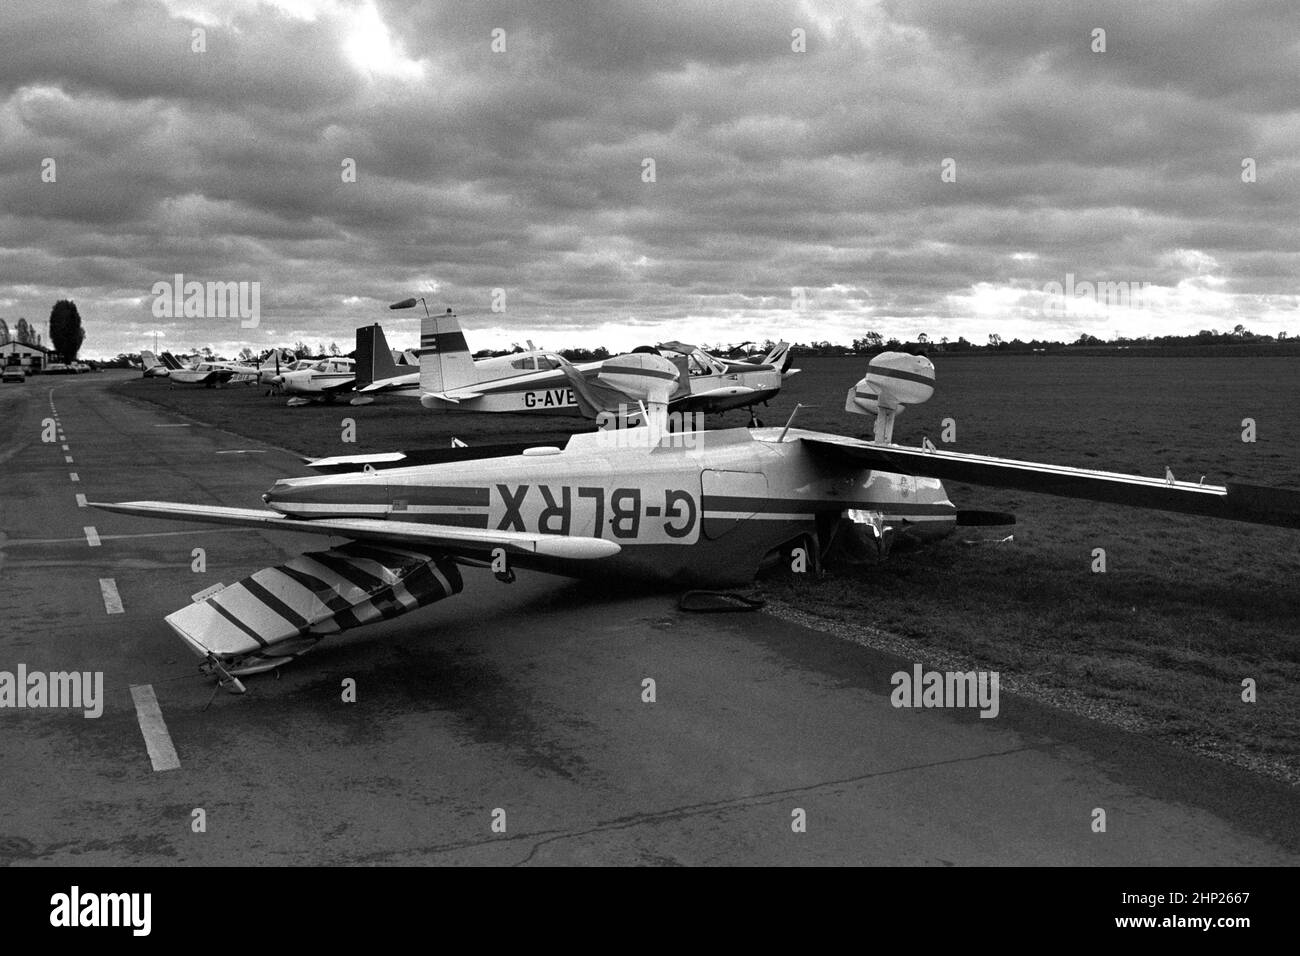 Aktenfoto vom 16/10/1987 eines leichten Flugzeugs auf dem Kopf des Großen Sturms von 1987, auf dem Flugplatz Stapleford Abbotts in der Nähe von Epping in Essex. Ausgabedatum: Freitag, 18. Februar 2022. Stockfoto